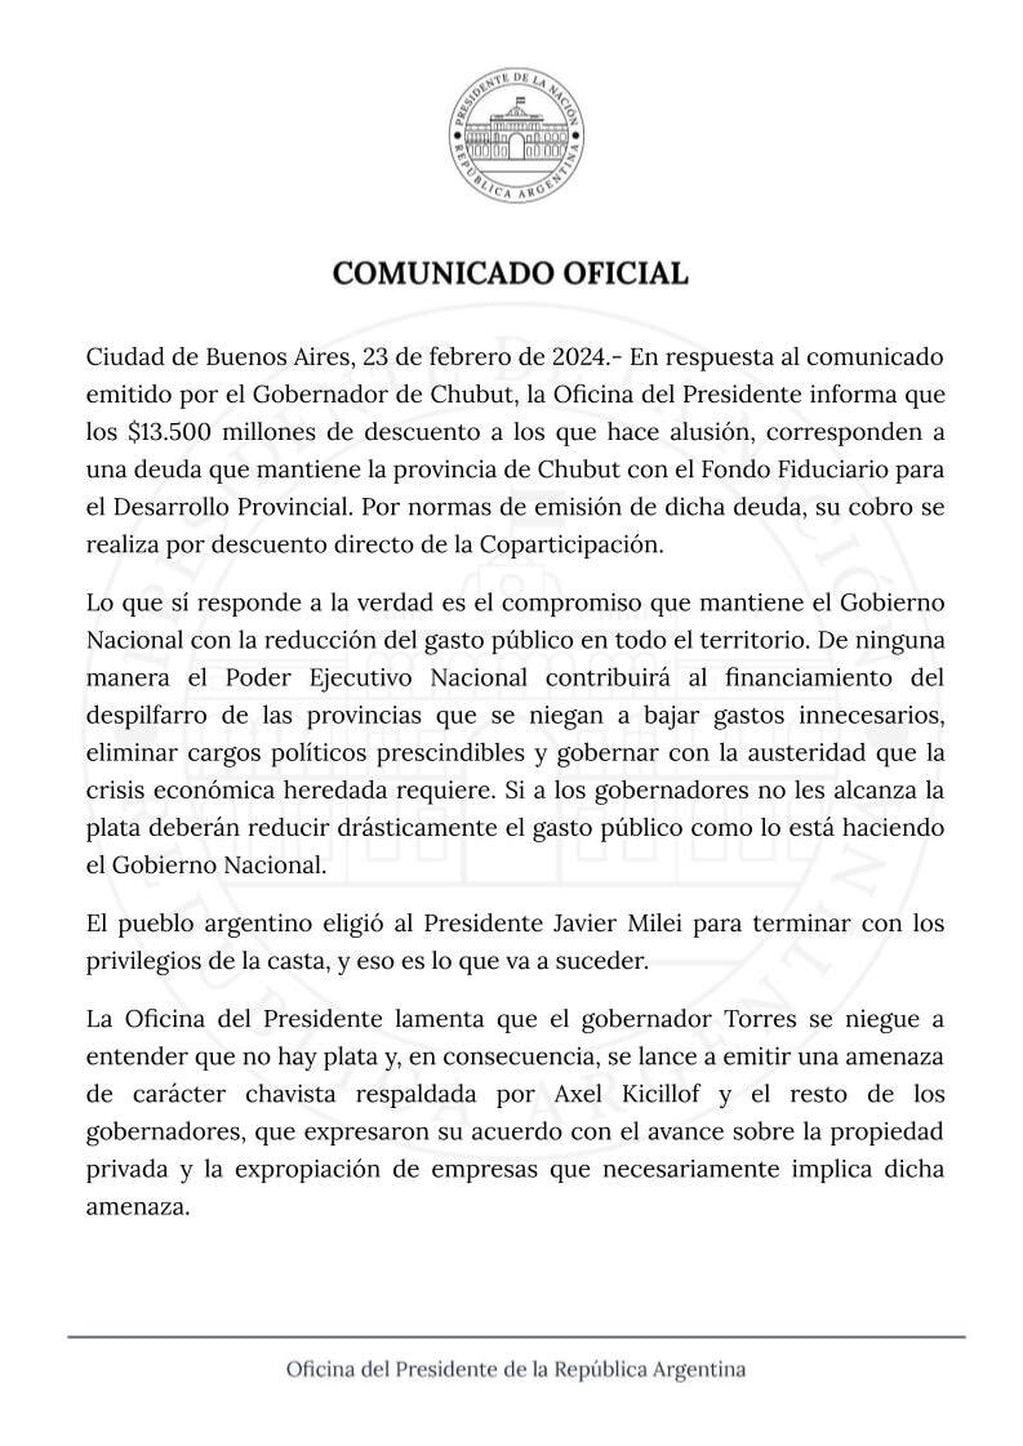 La respuesta del gobierno nacional al gobernador de Chubut, Ignacio Torres. (X)